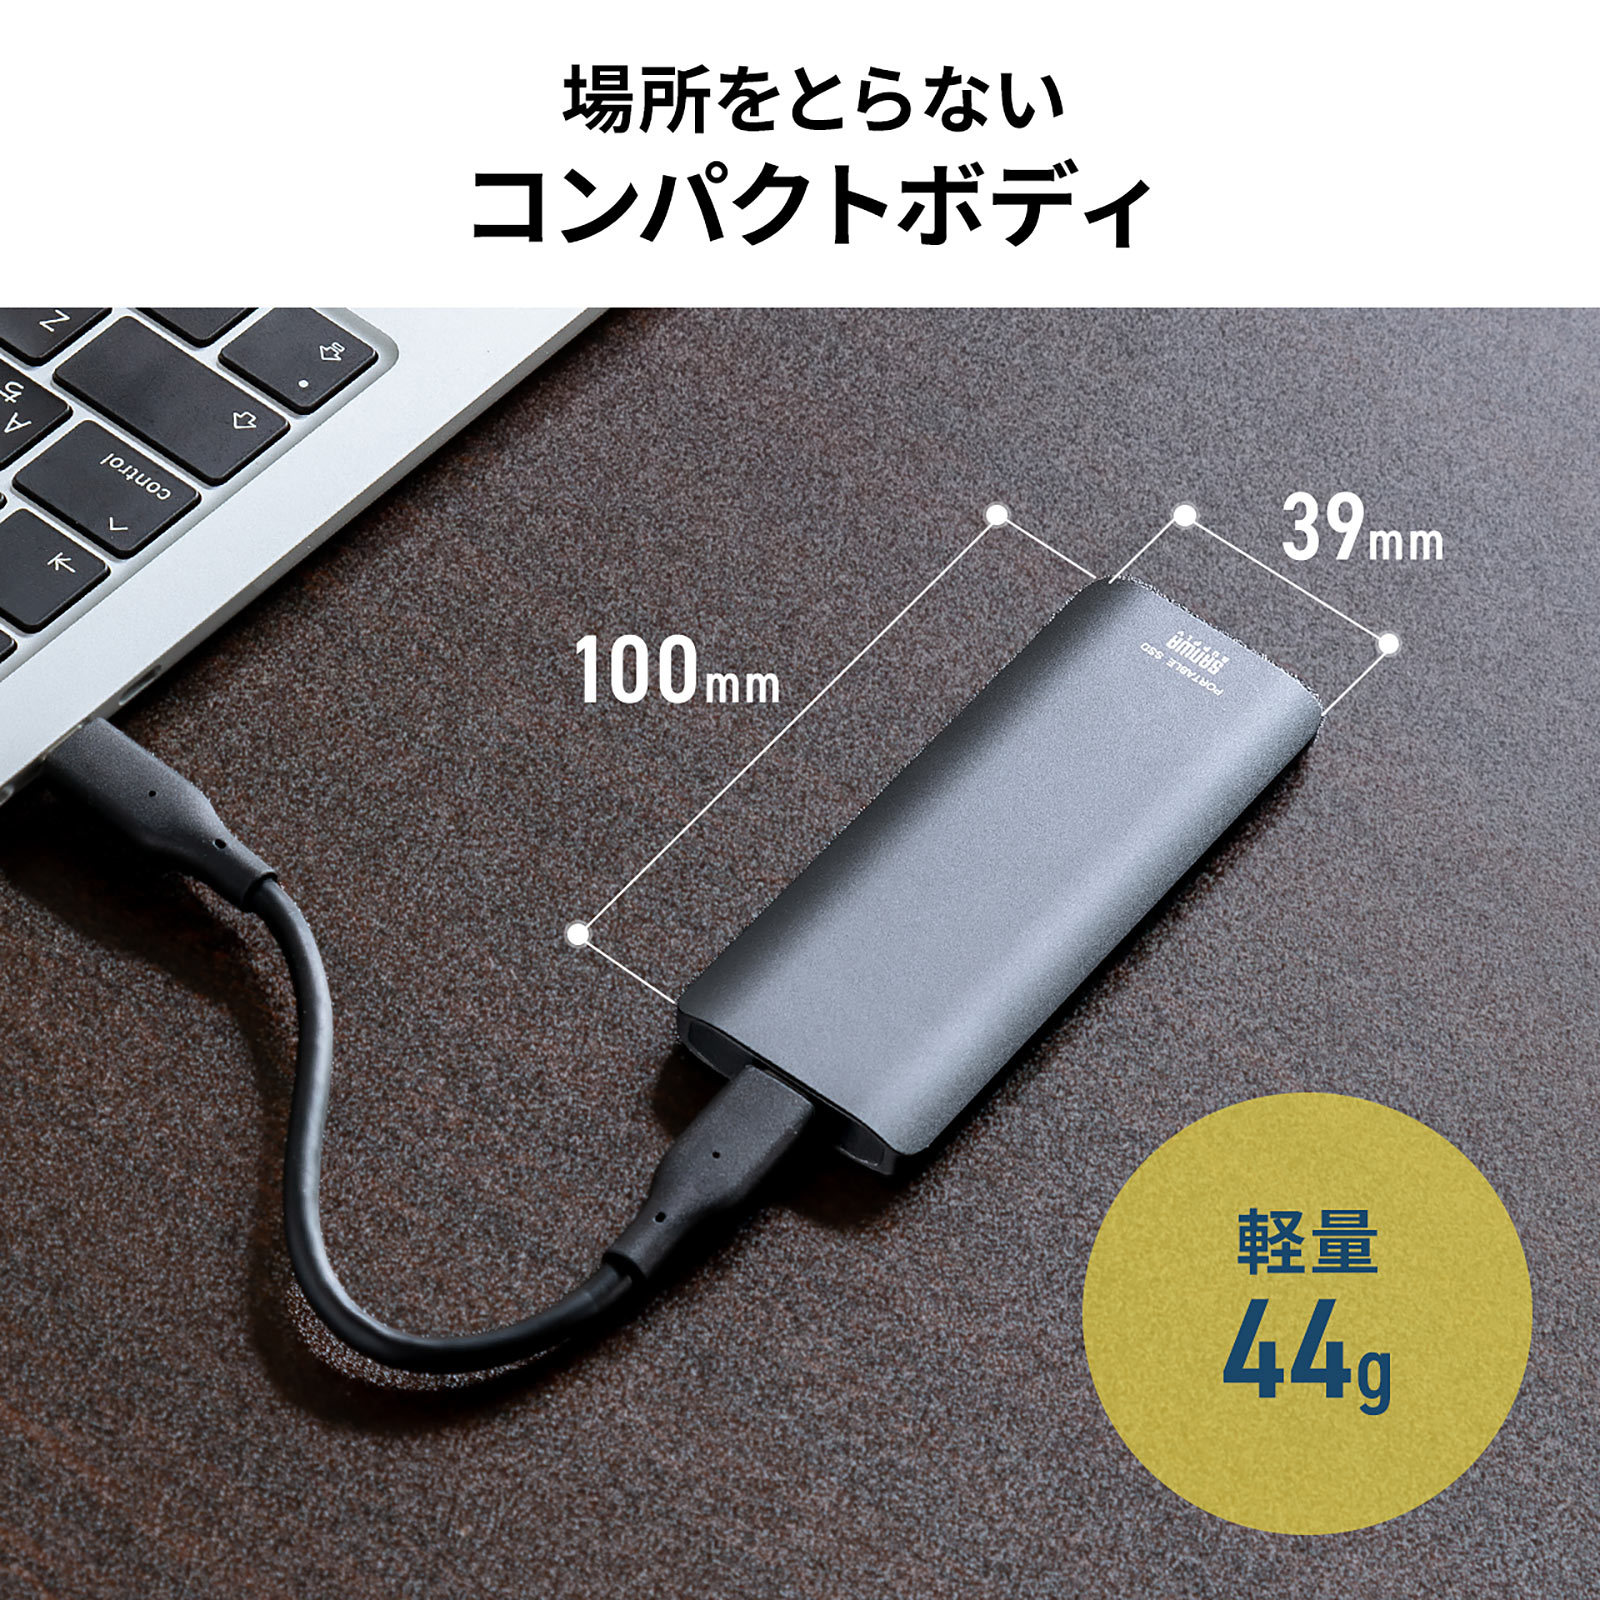 ポータブルSSD 外付け USB3.2 Gen2 512GB 最大書込速度約540MB s 小型